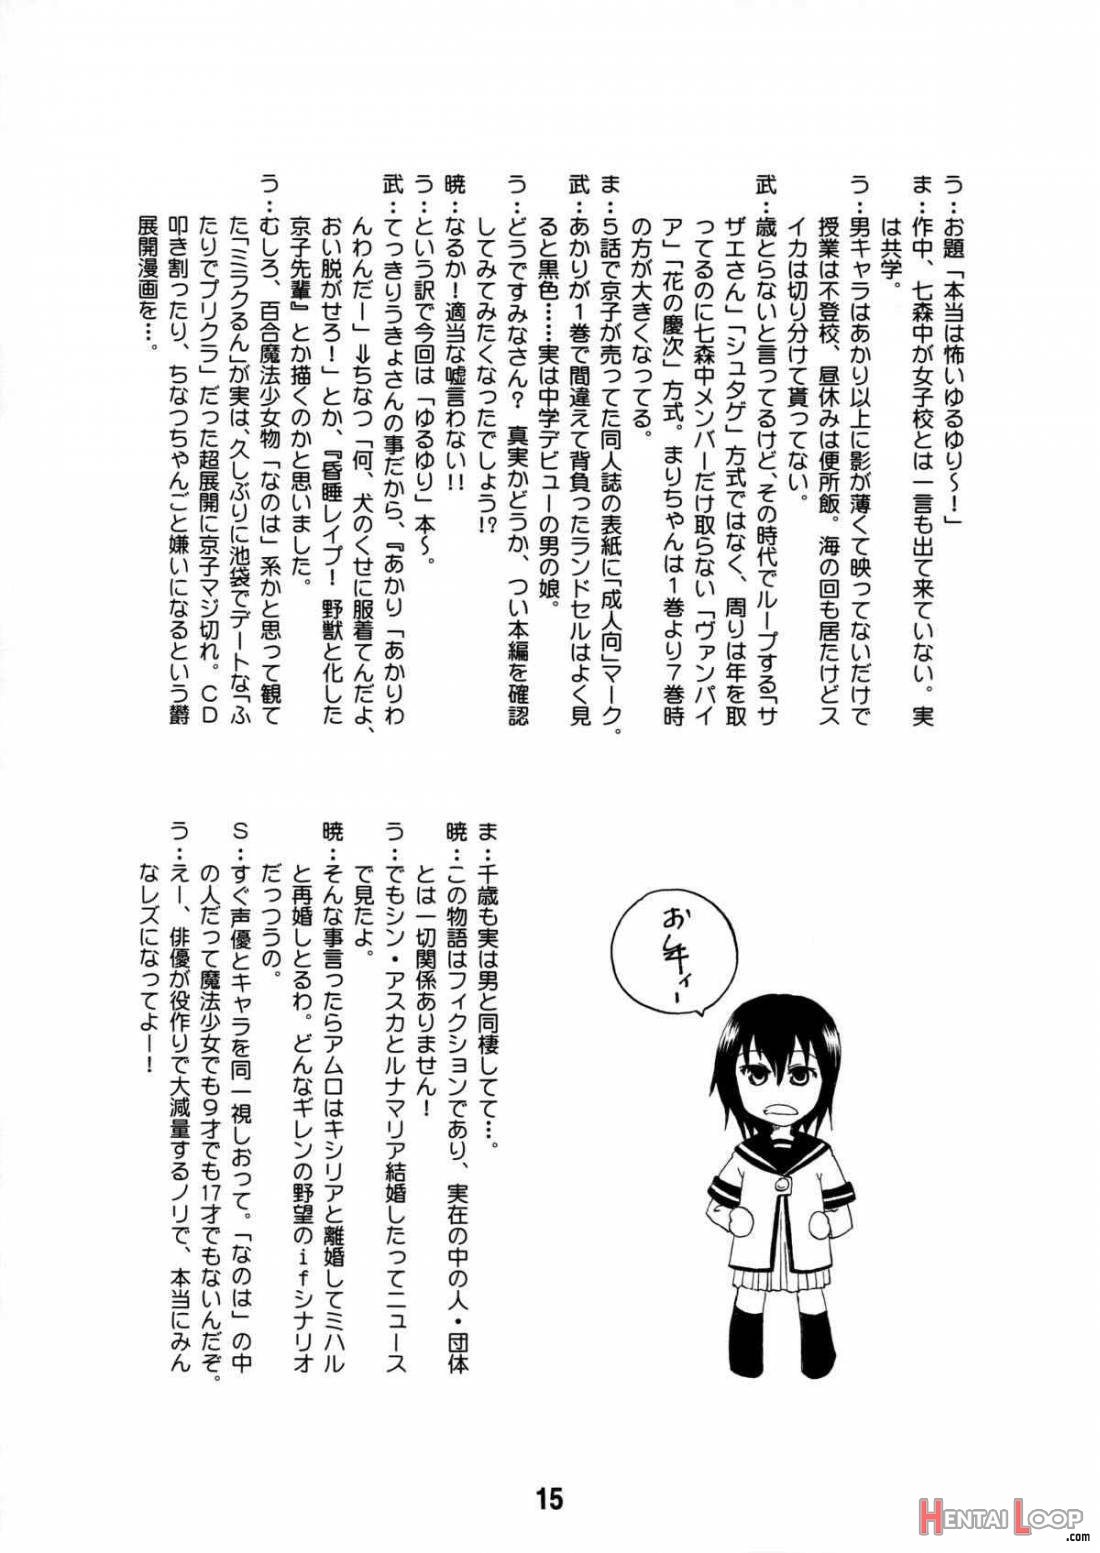 Yurarararakkusu page 14